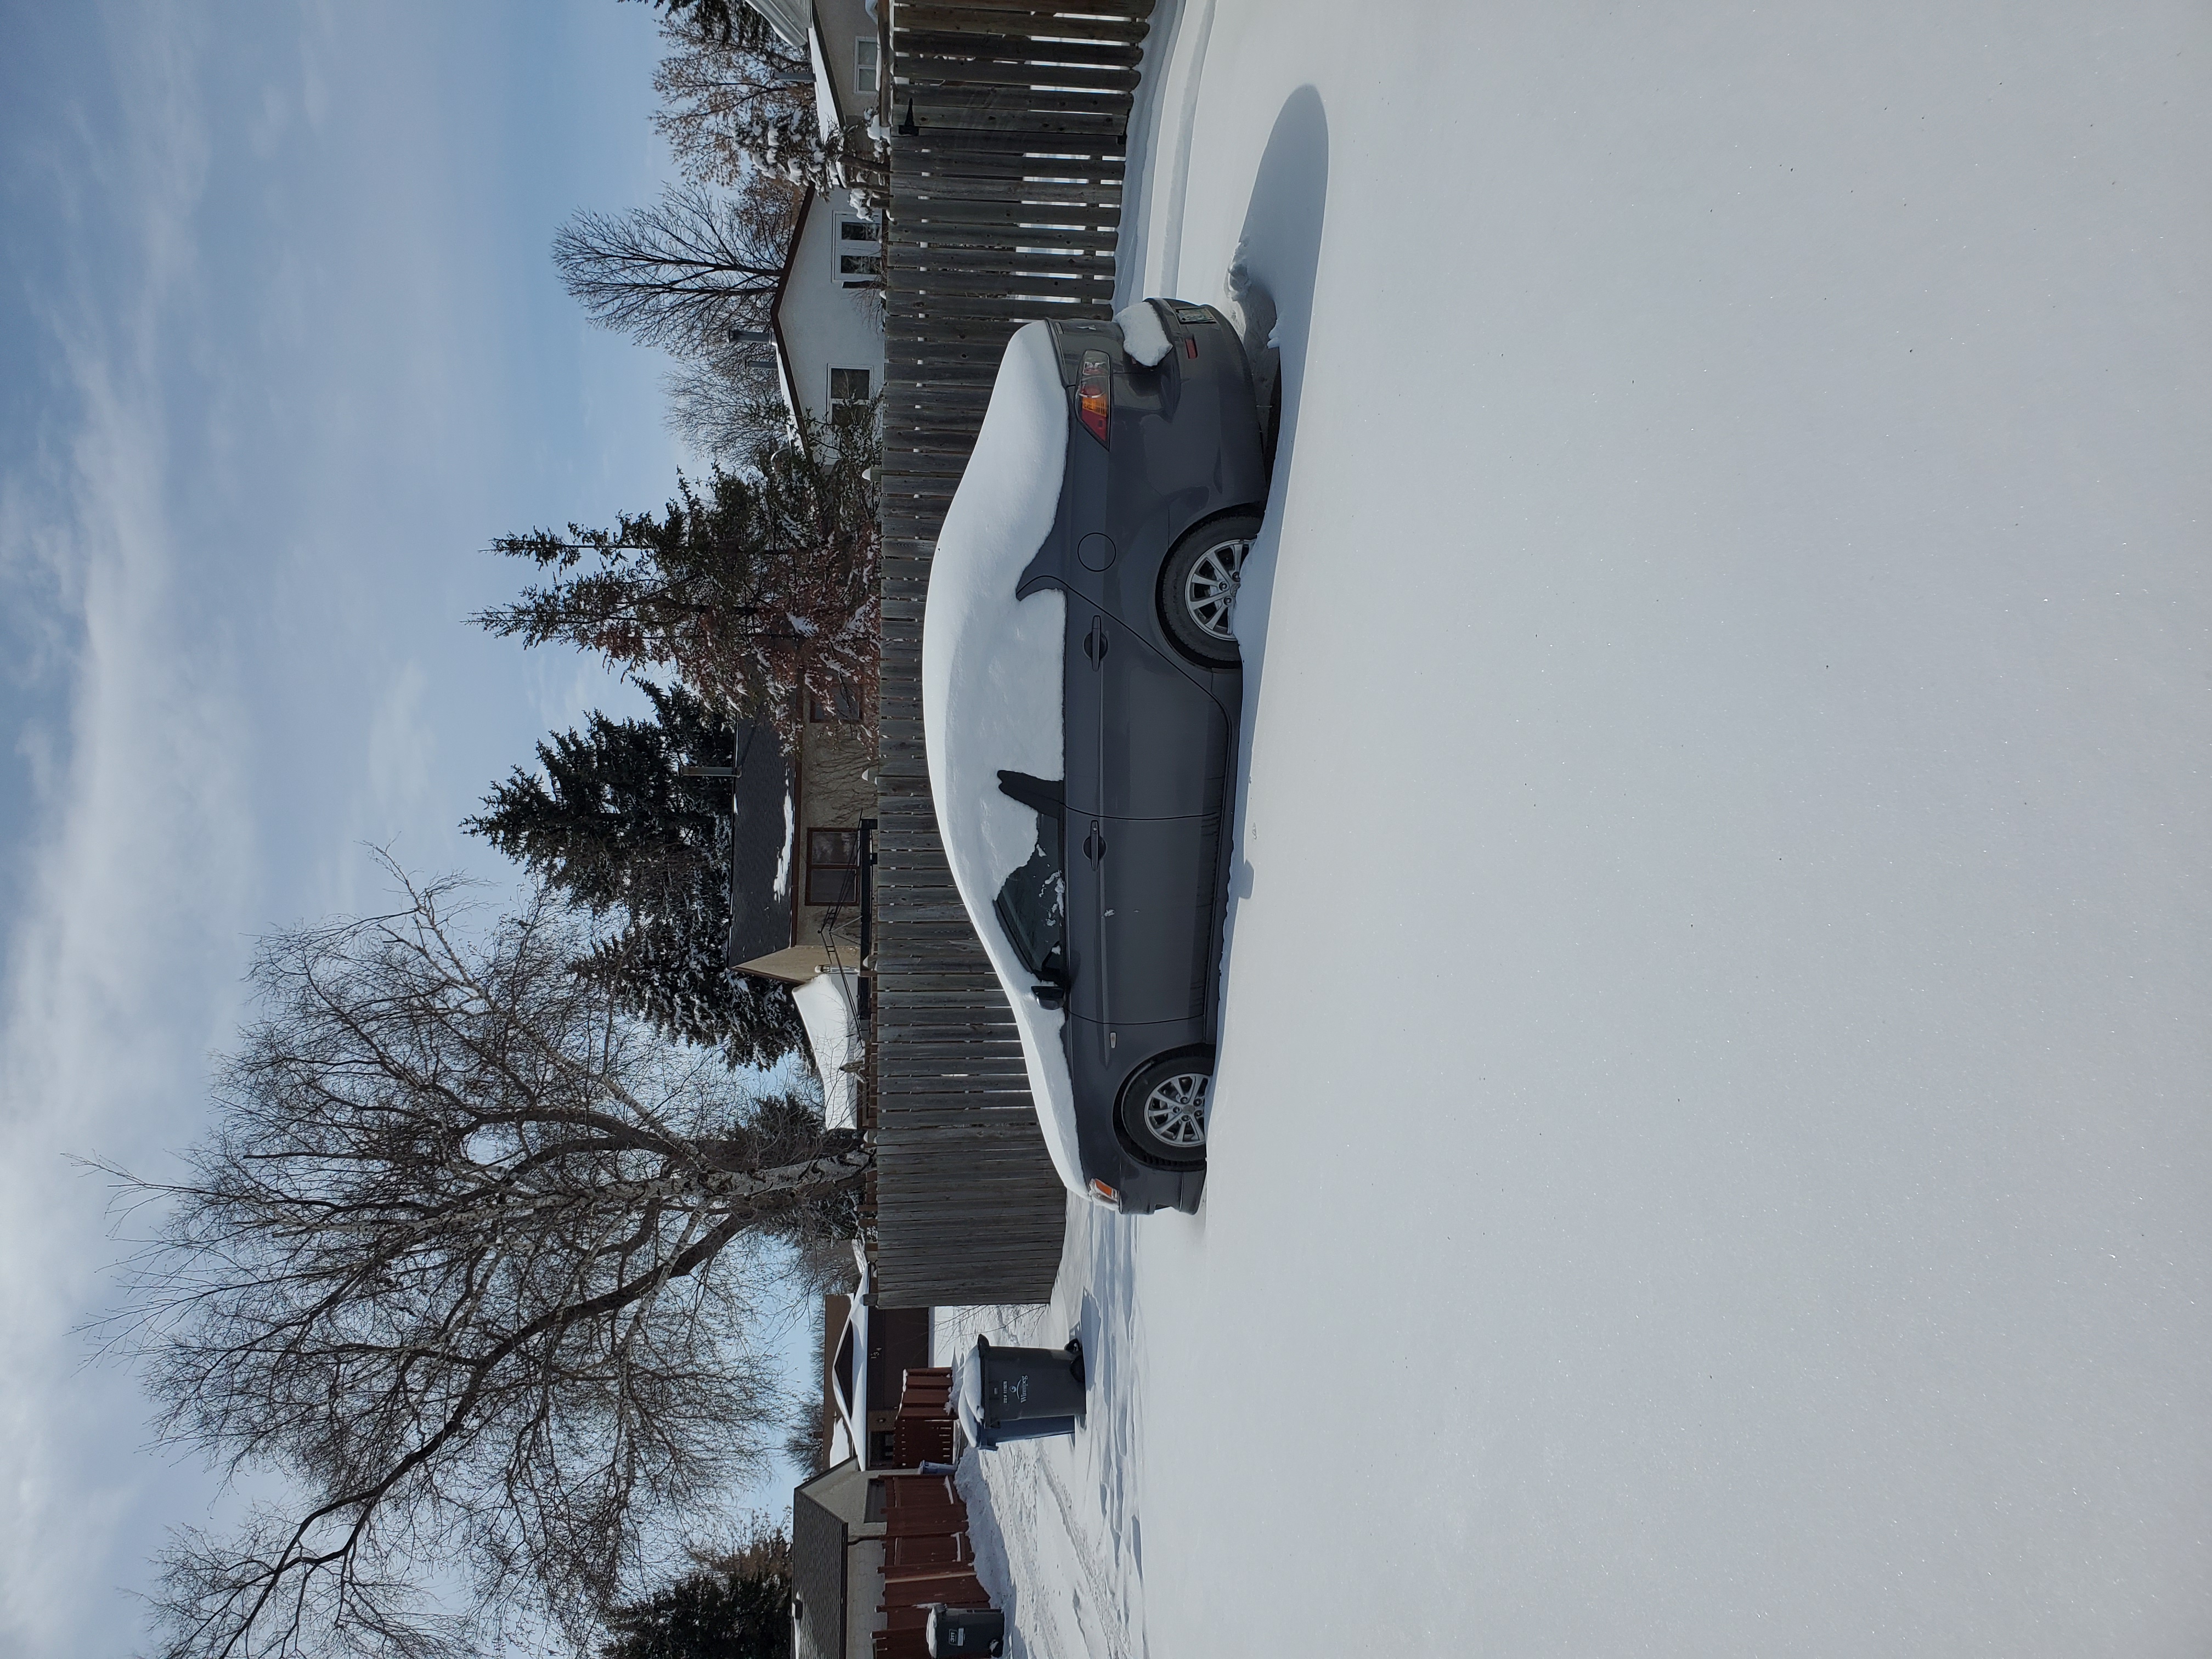 Auto komplett in Schnee bedeckt, Winnipeg, Manitoba